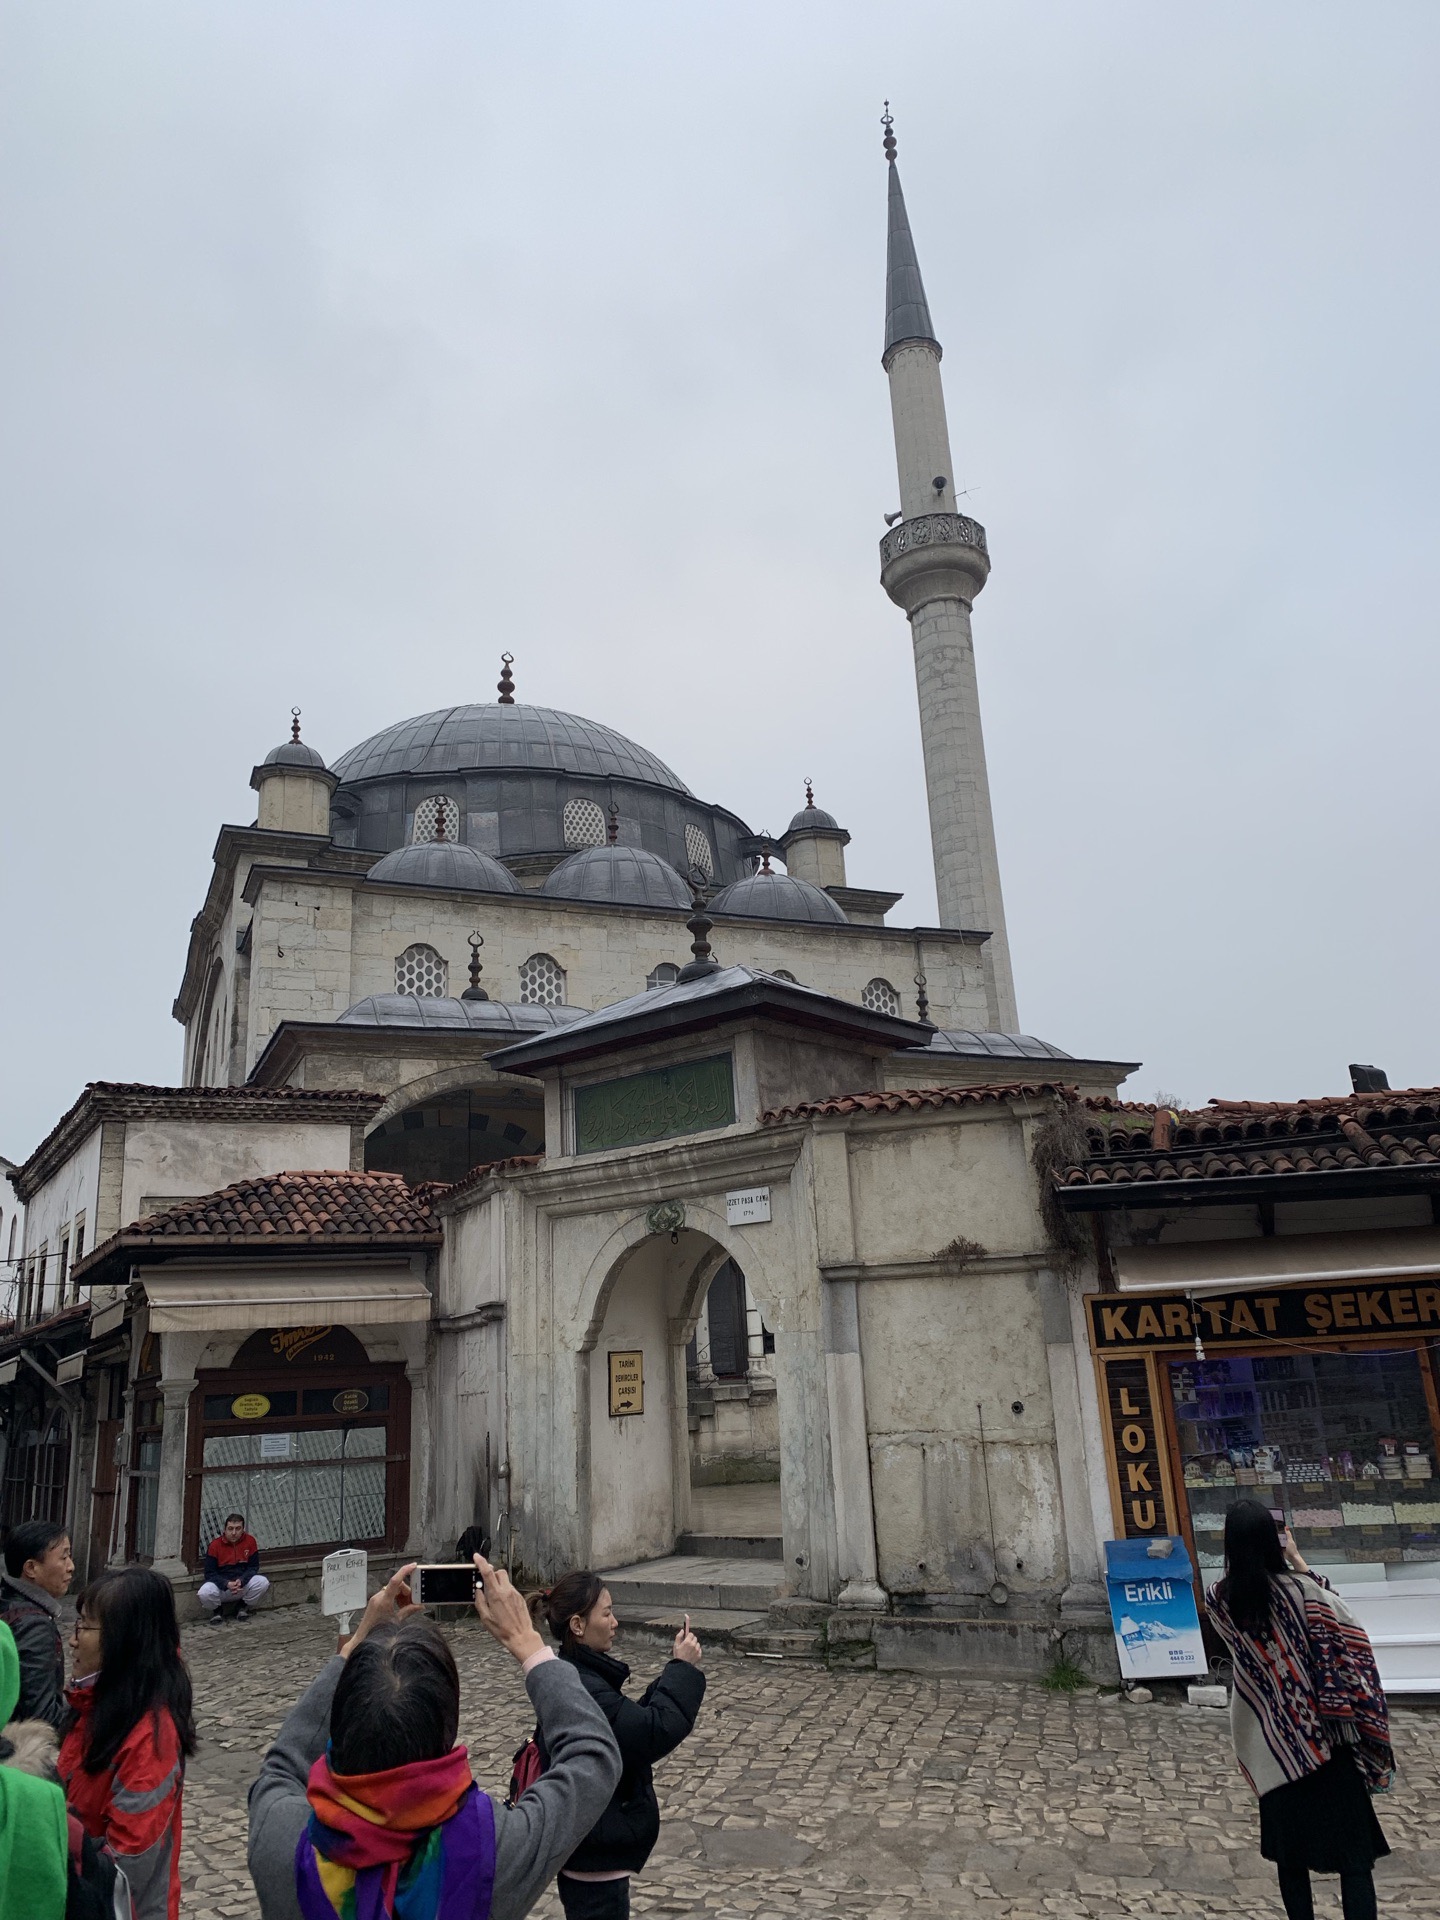 位于土耳其西黑海地区的番红花古镇保留了奥斯曼土耳其帝国时期的历史文化，